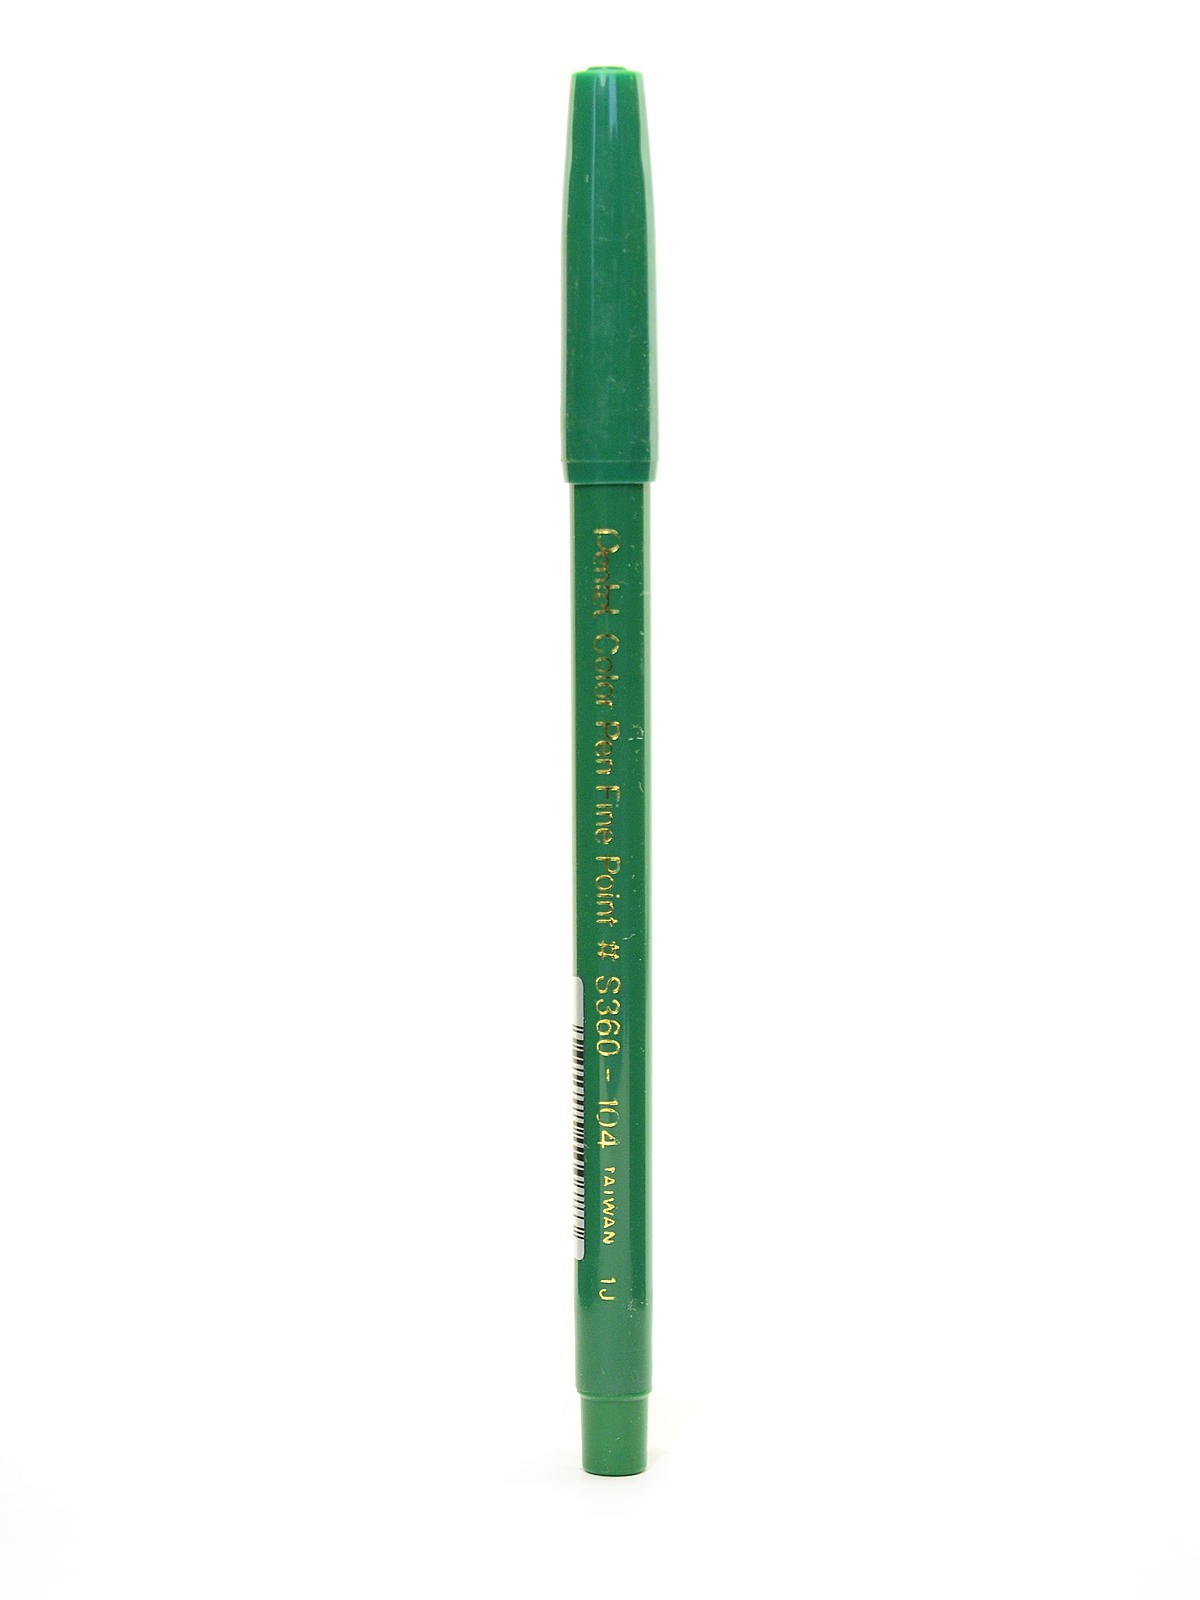 Pentel S360 Color Pen Sets - Set of 36